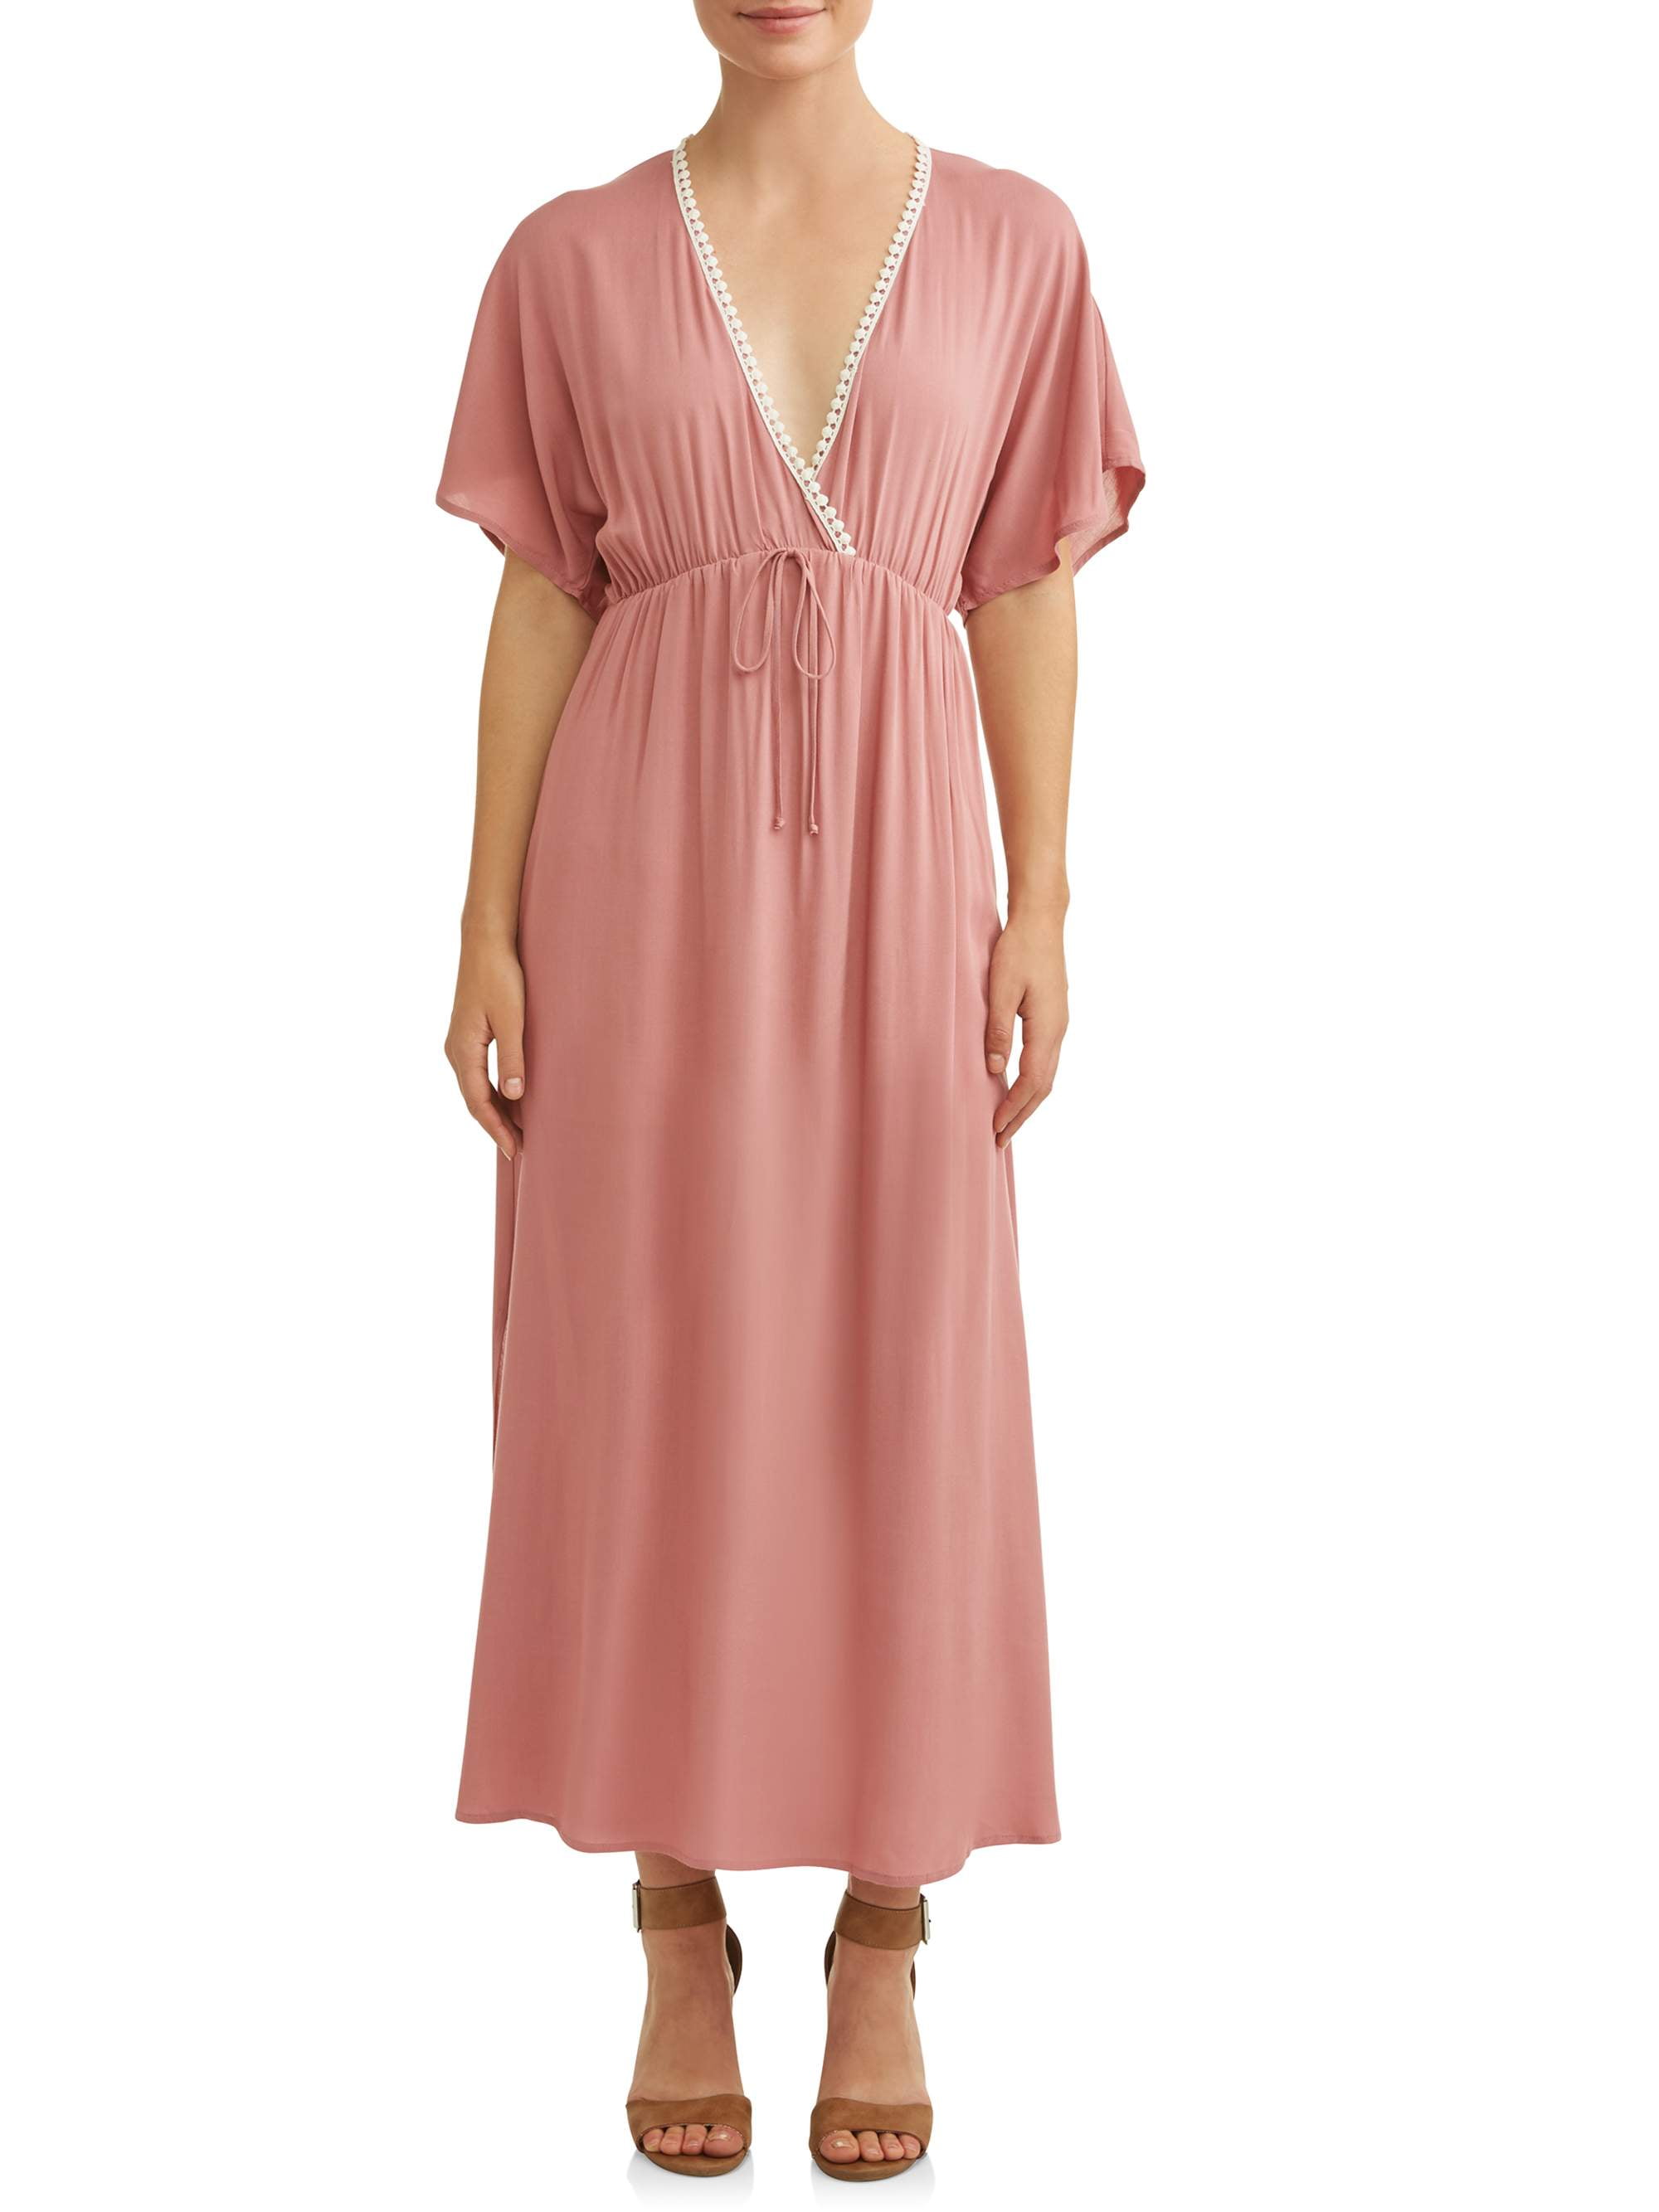 LA Gypsy - Women's Maxi Dress with Trim - Walmart.com